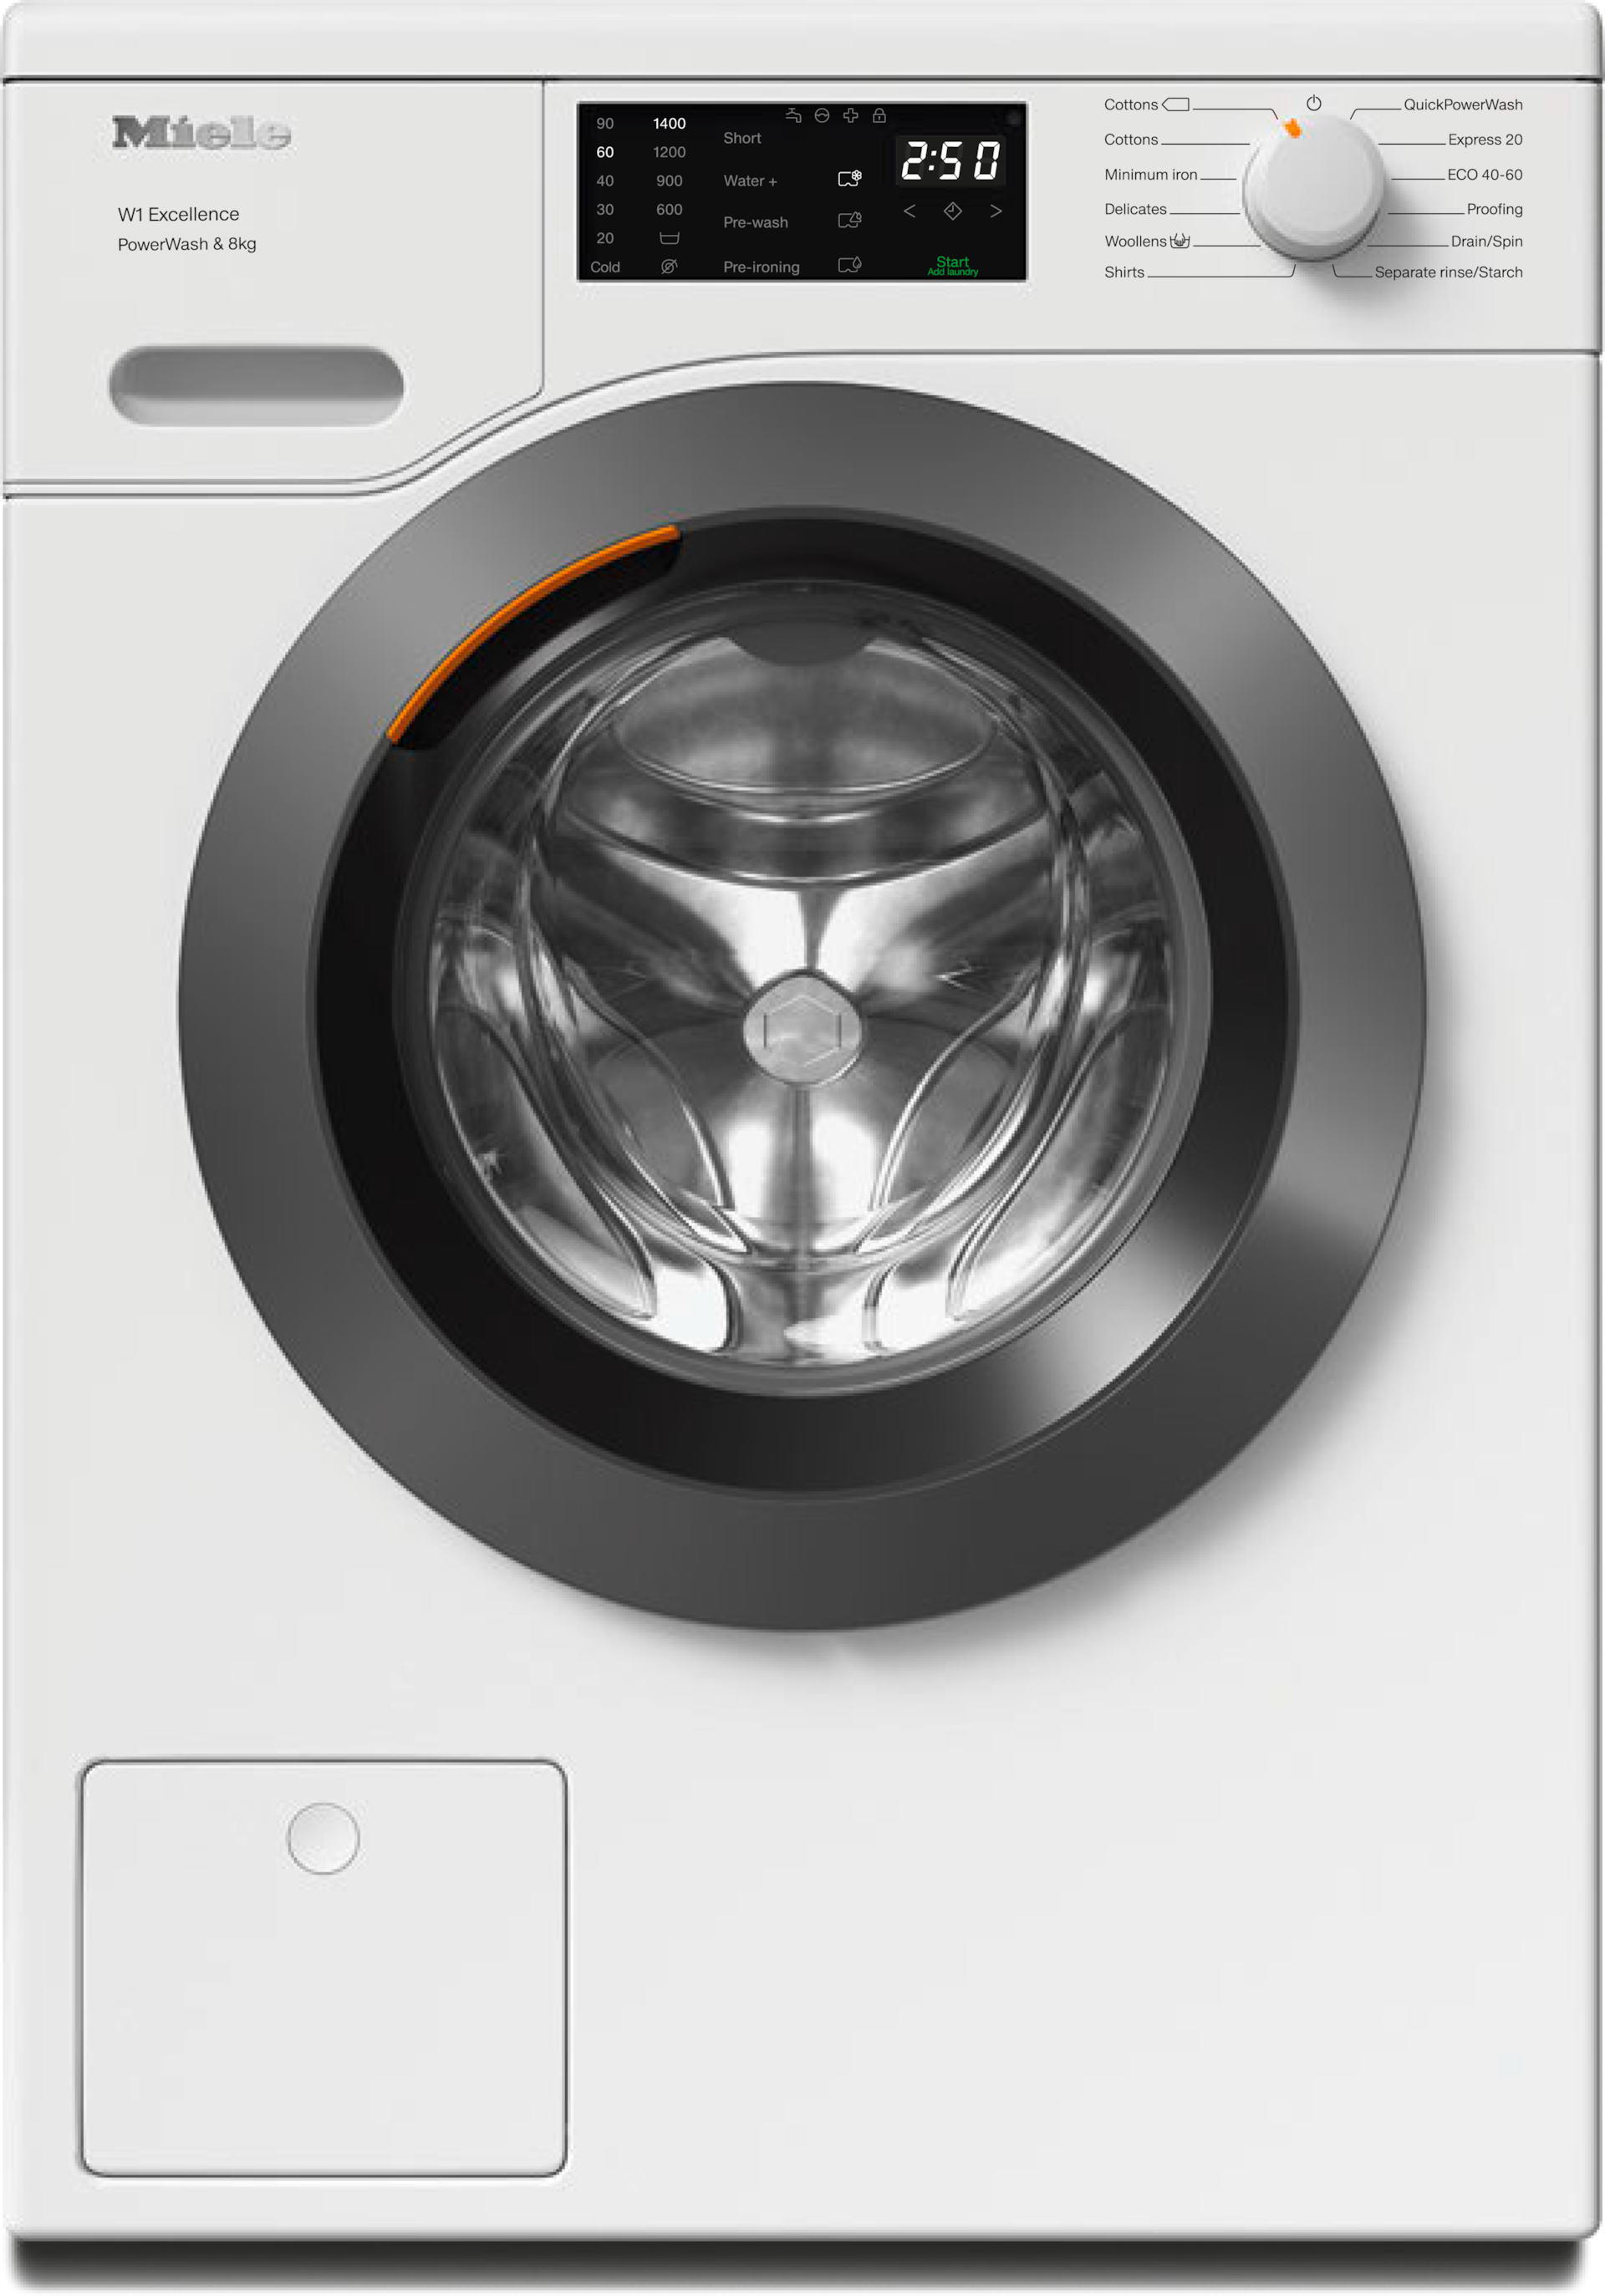 Washing machines - WED325 WCS PWash&8kg Lotus white - 1